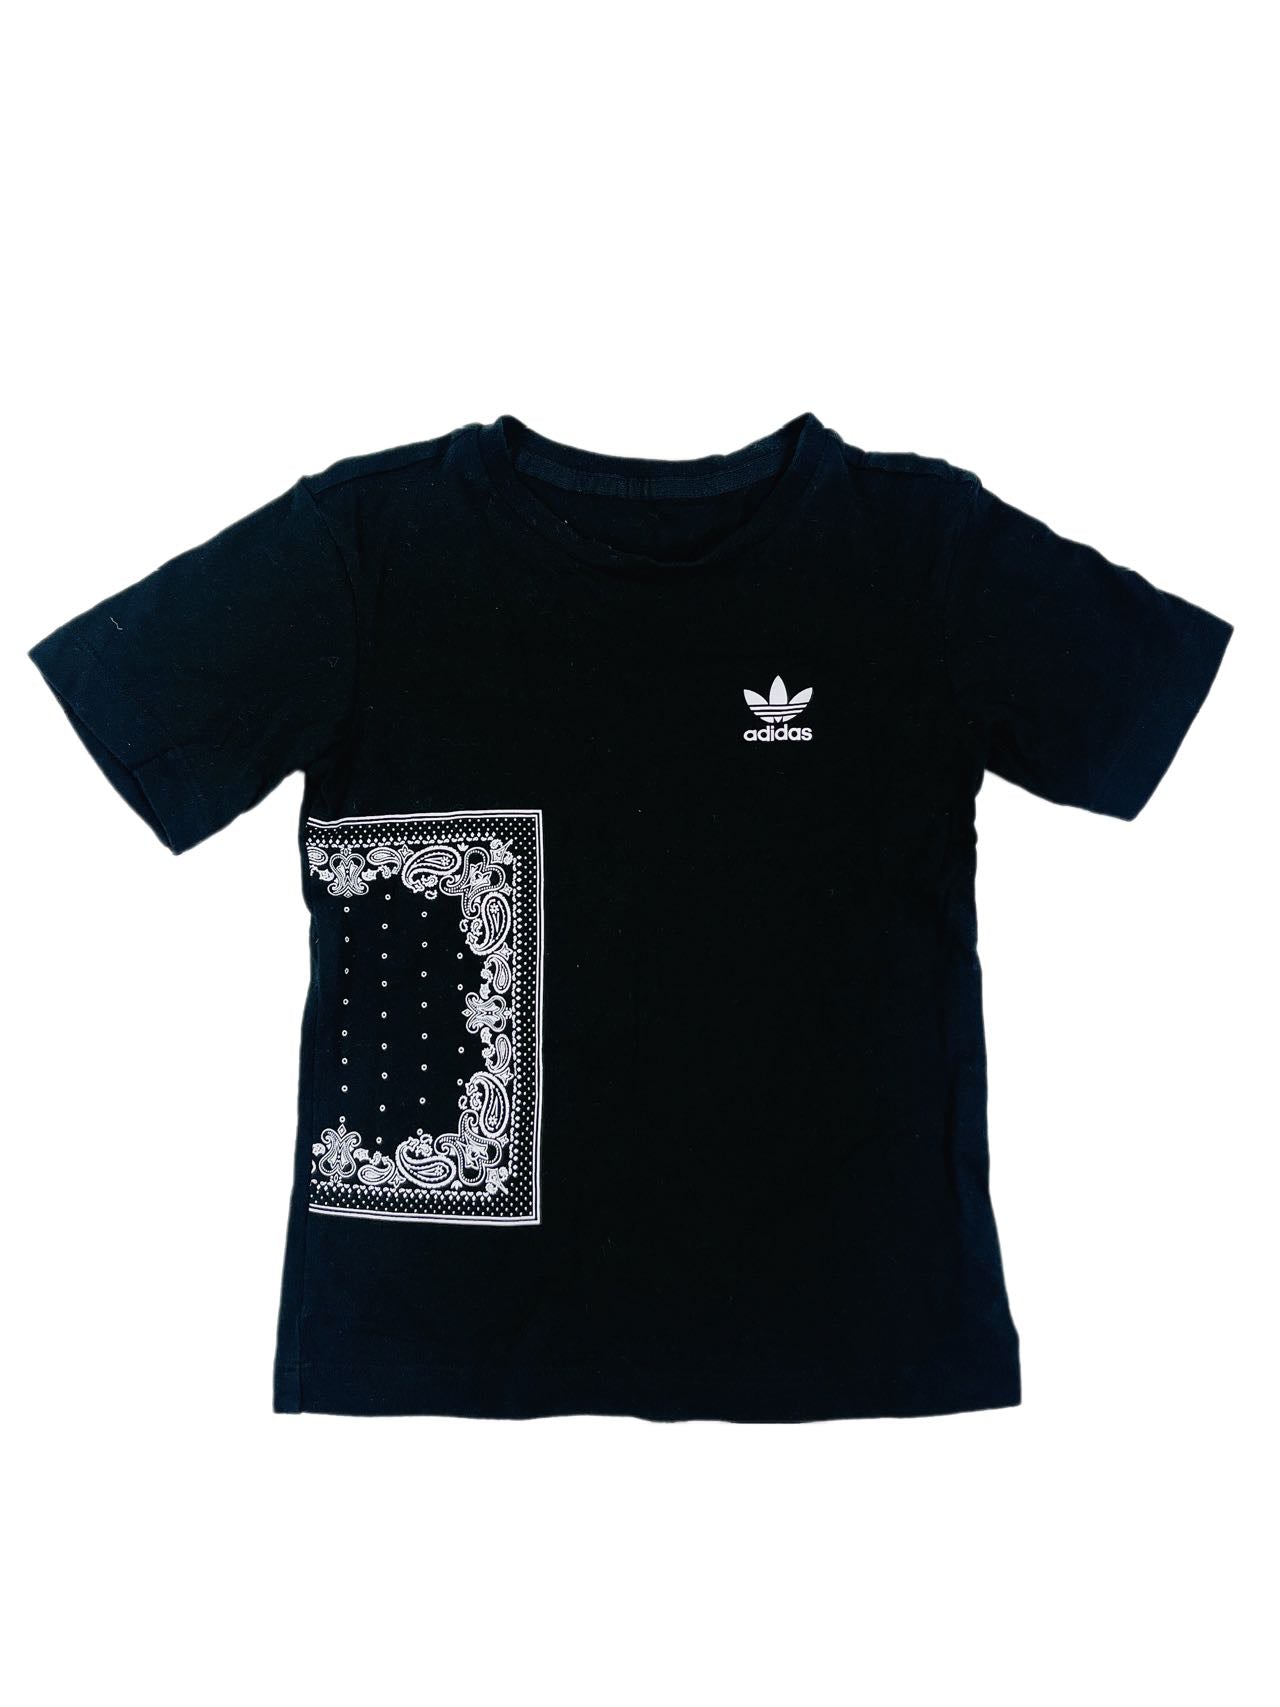 Adidas Black Shirt (4Y)